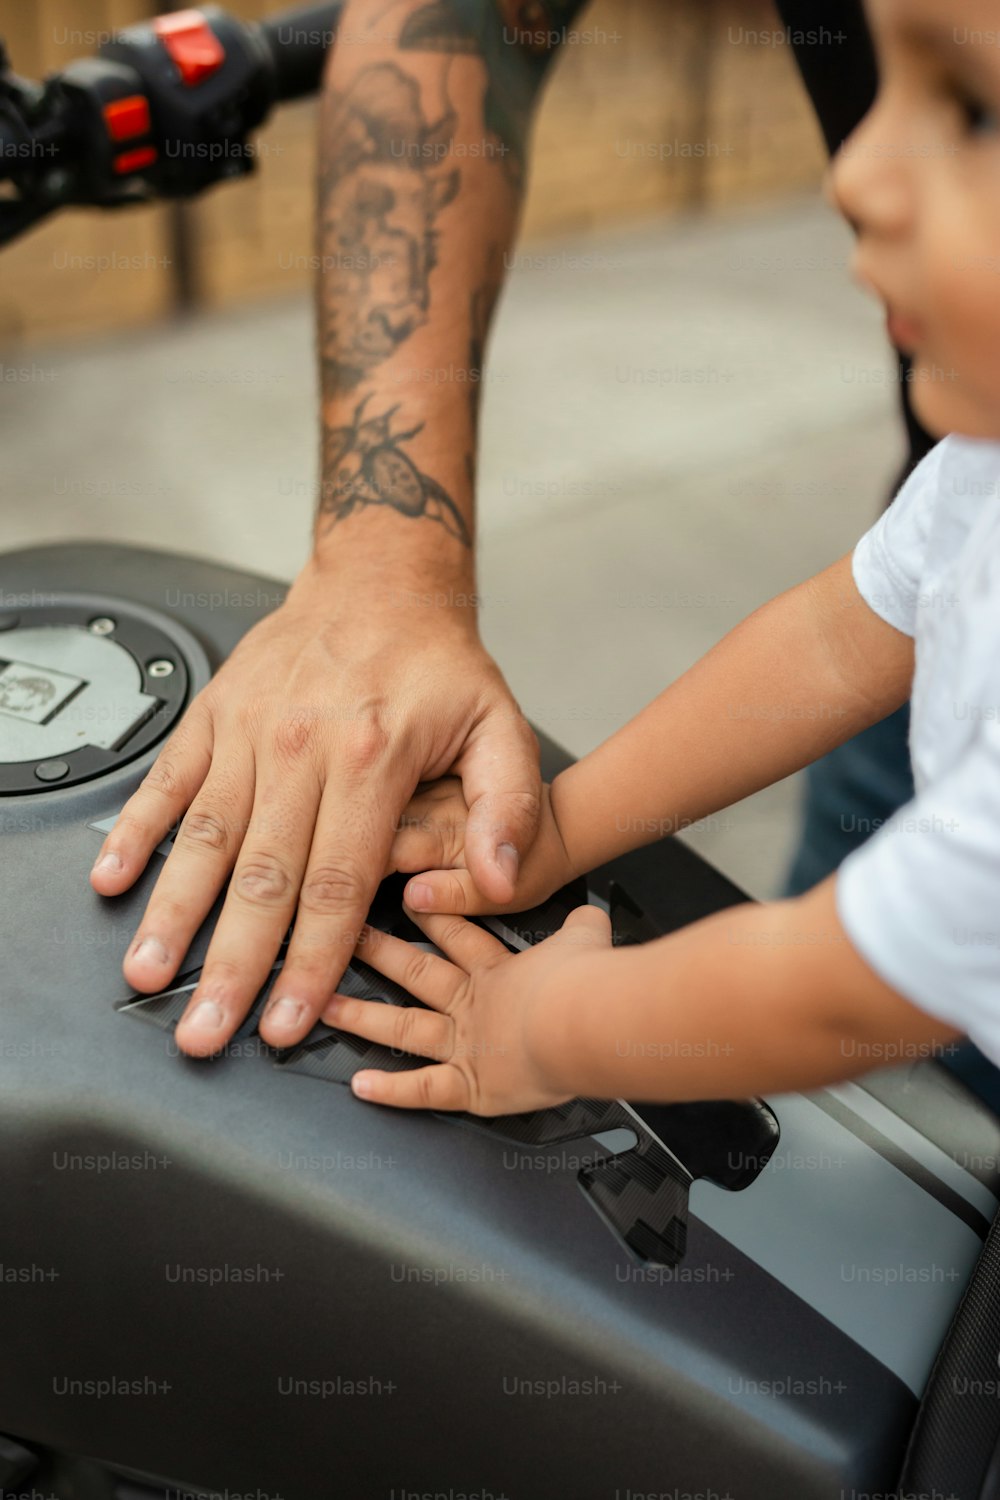 Un uomo e un bambino piccolo stanno toccando una moto